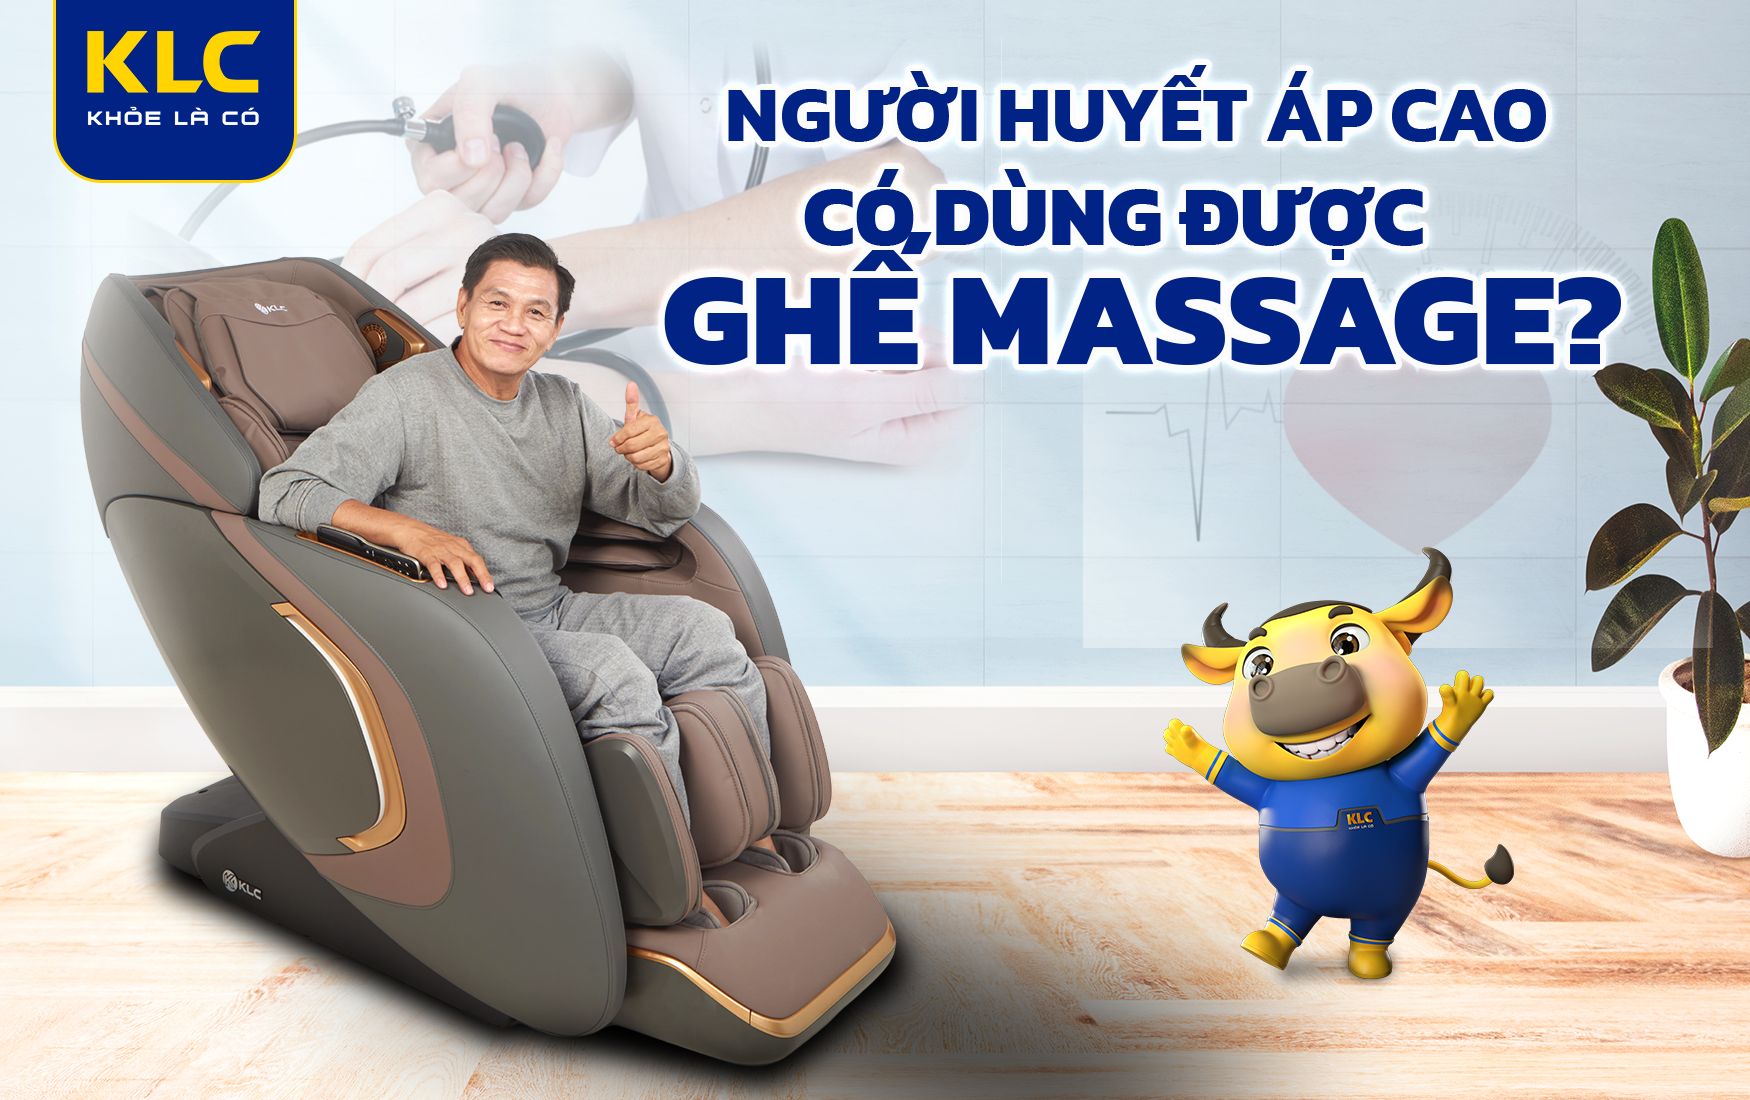 Giải đáp: Người huyết áp cao có dùng được ghế massage?